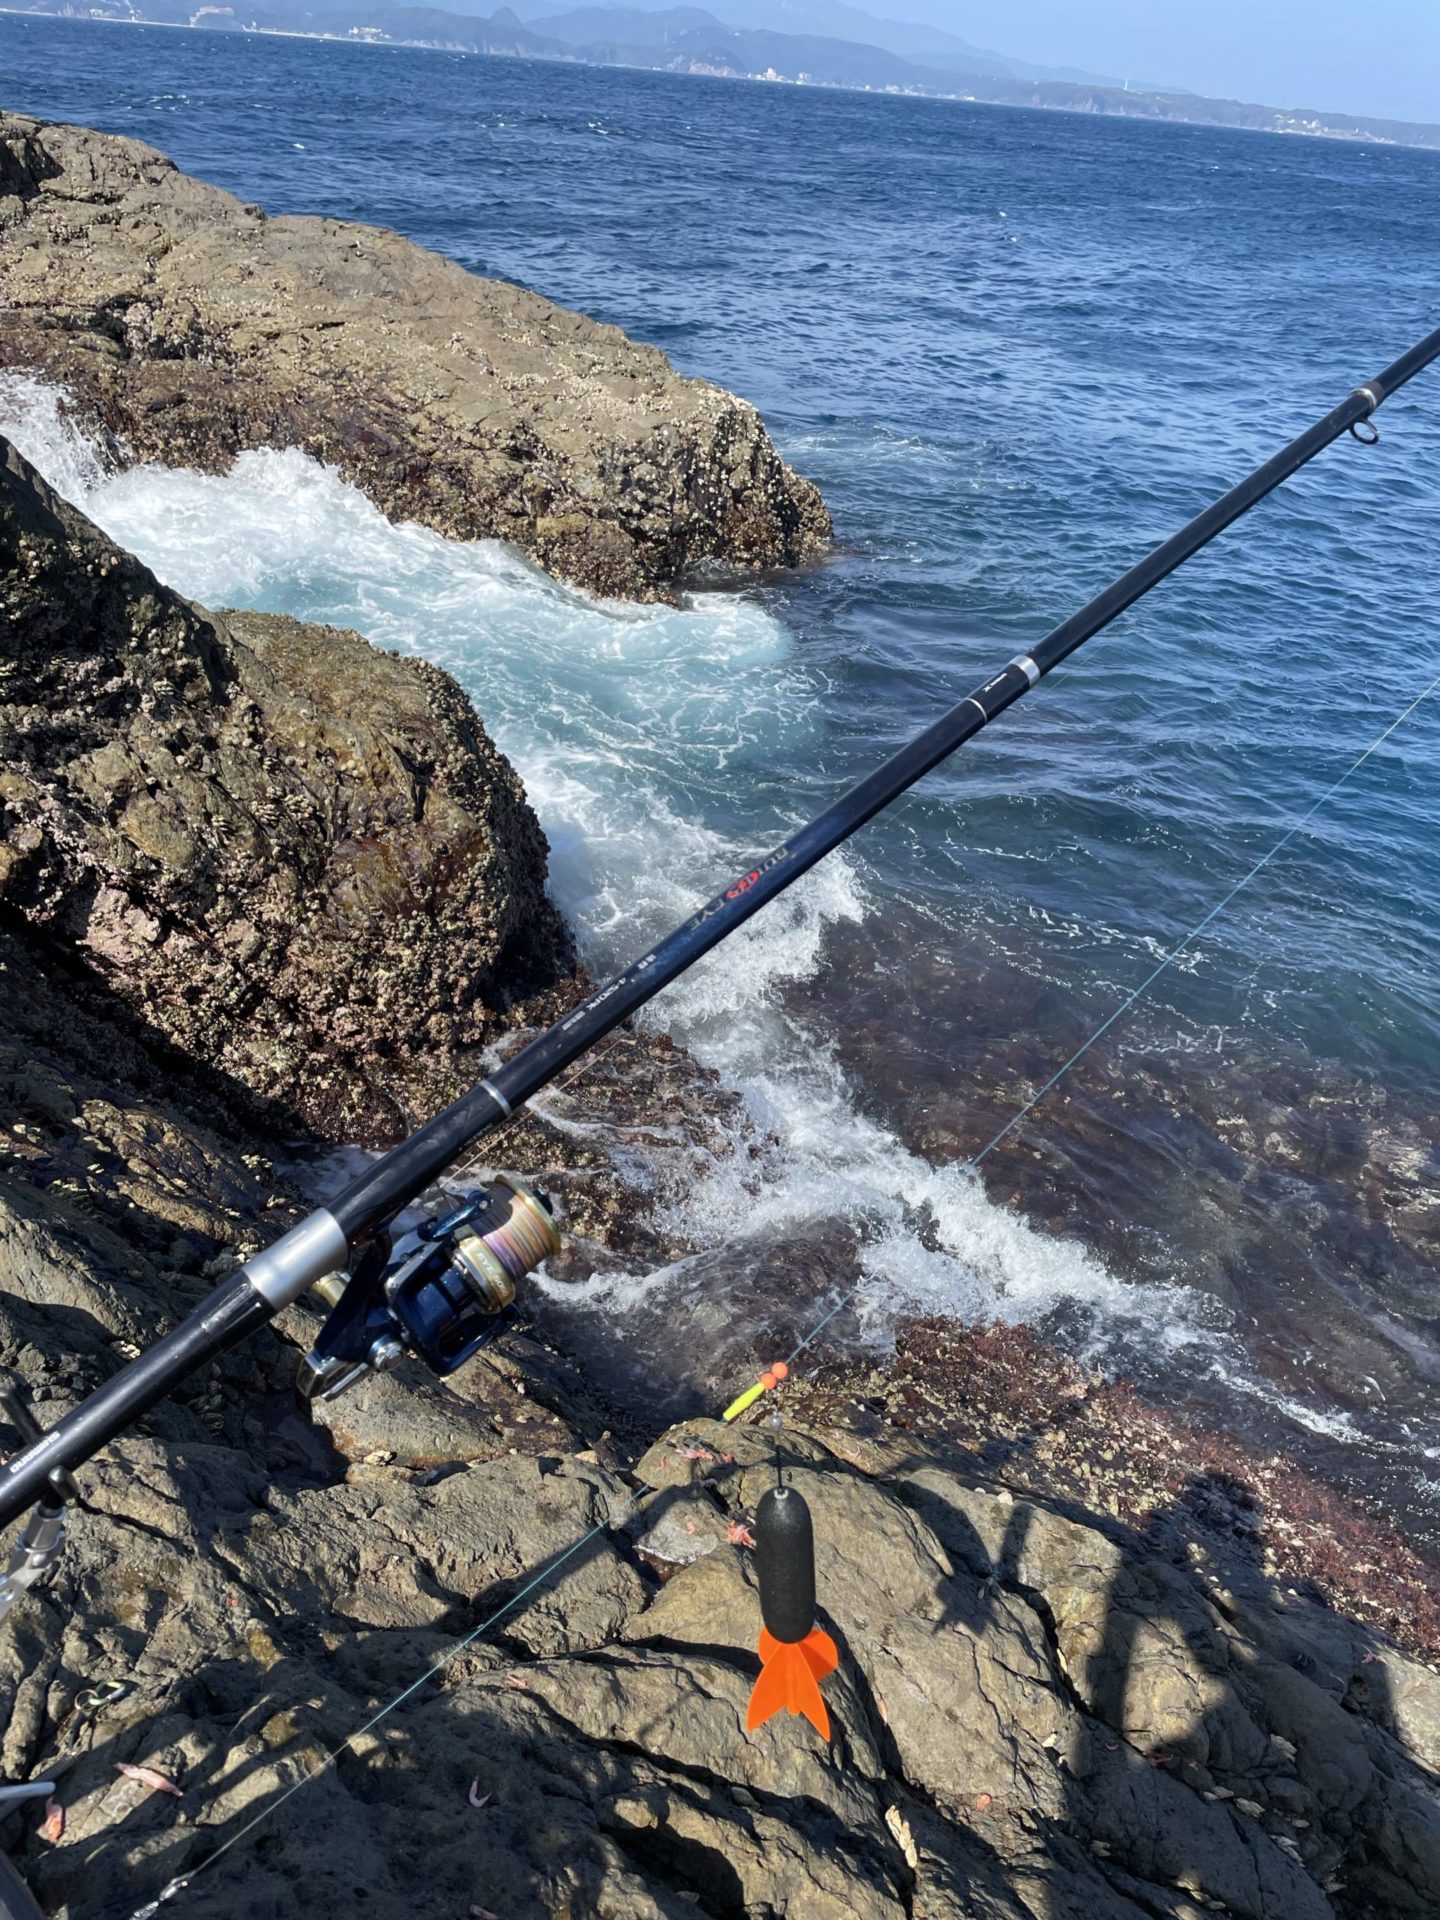 カゴ釣りのおすすめ仕掛けとタックル紹介 堤防や磯から釣れる最強の裏技解説 Fishing Fishing